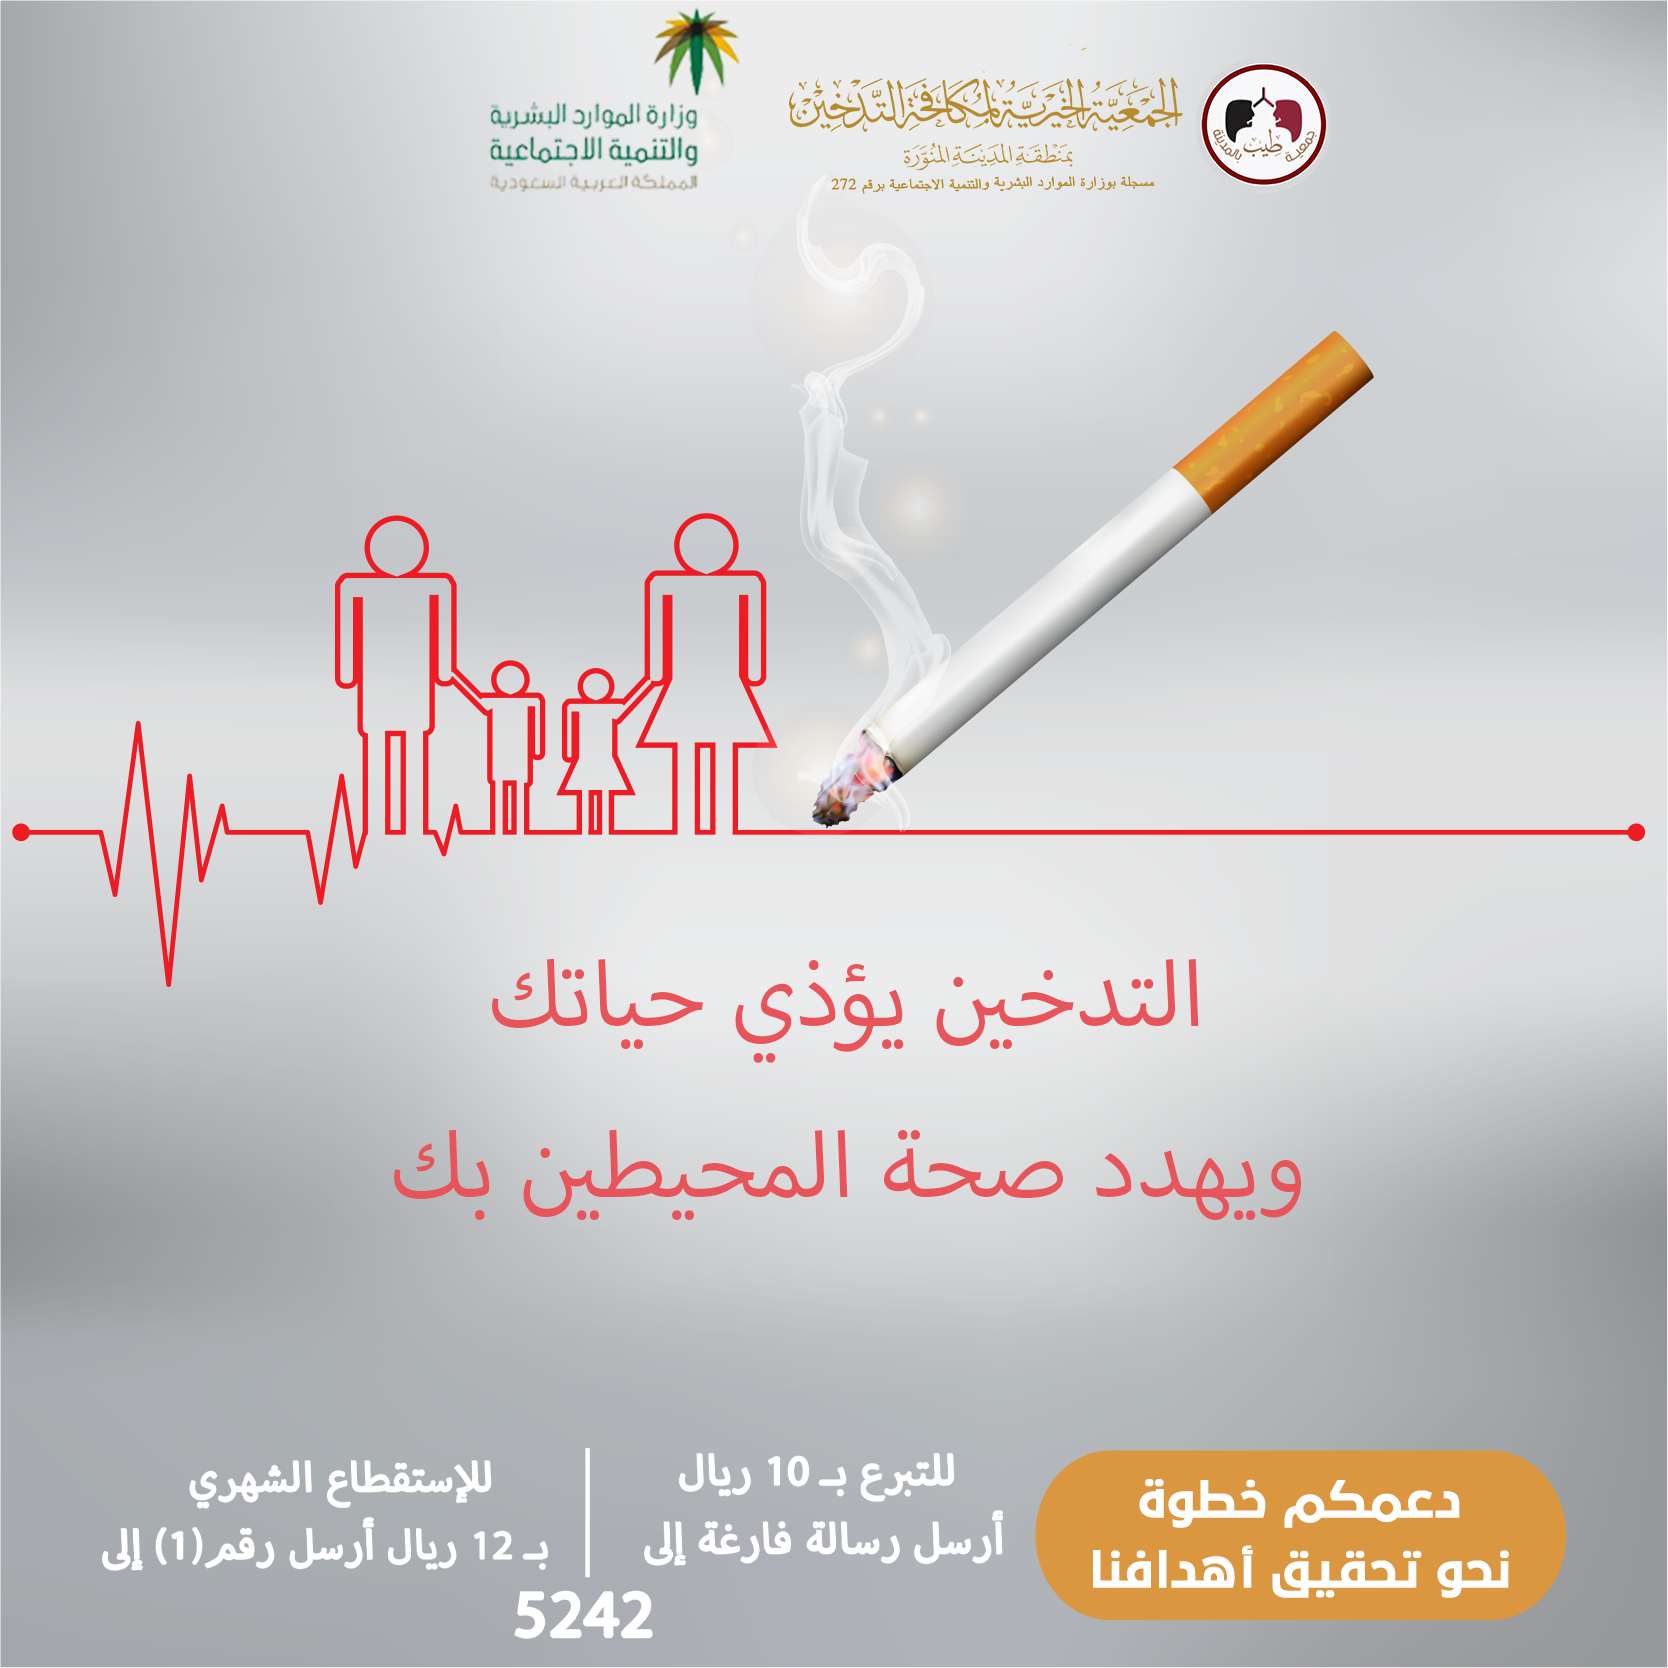 التدخين يؤذي حياتك رمز إعادة التدوير العالمي copy